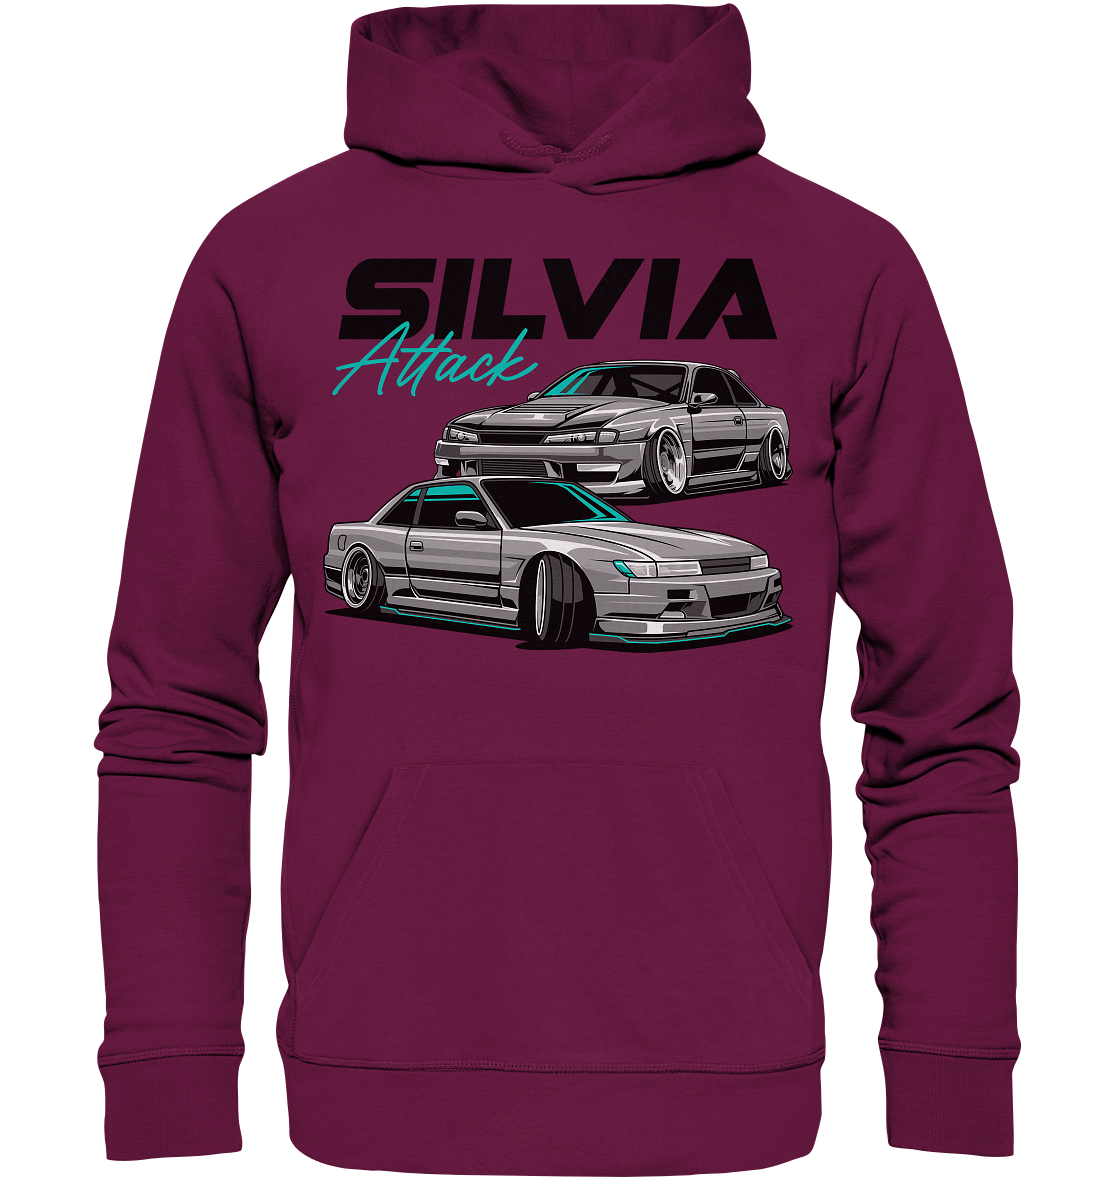 Silvia Attack - Premium Unisex Hoodie - MotoMerch.de